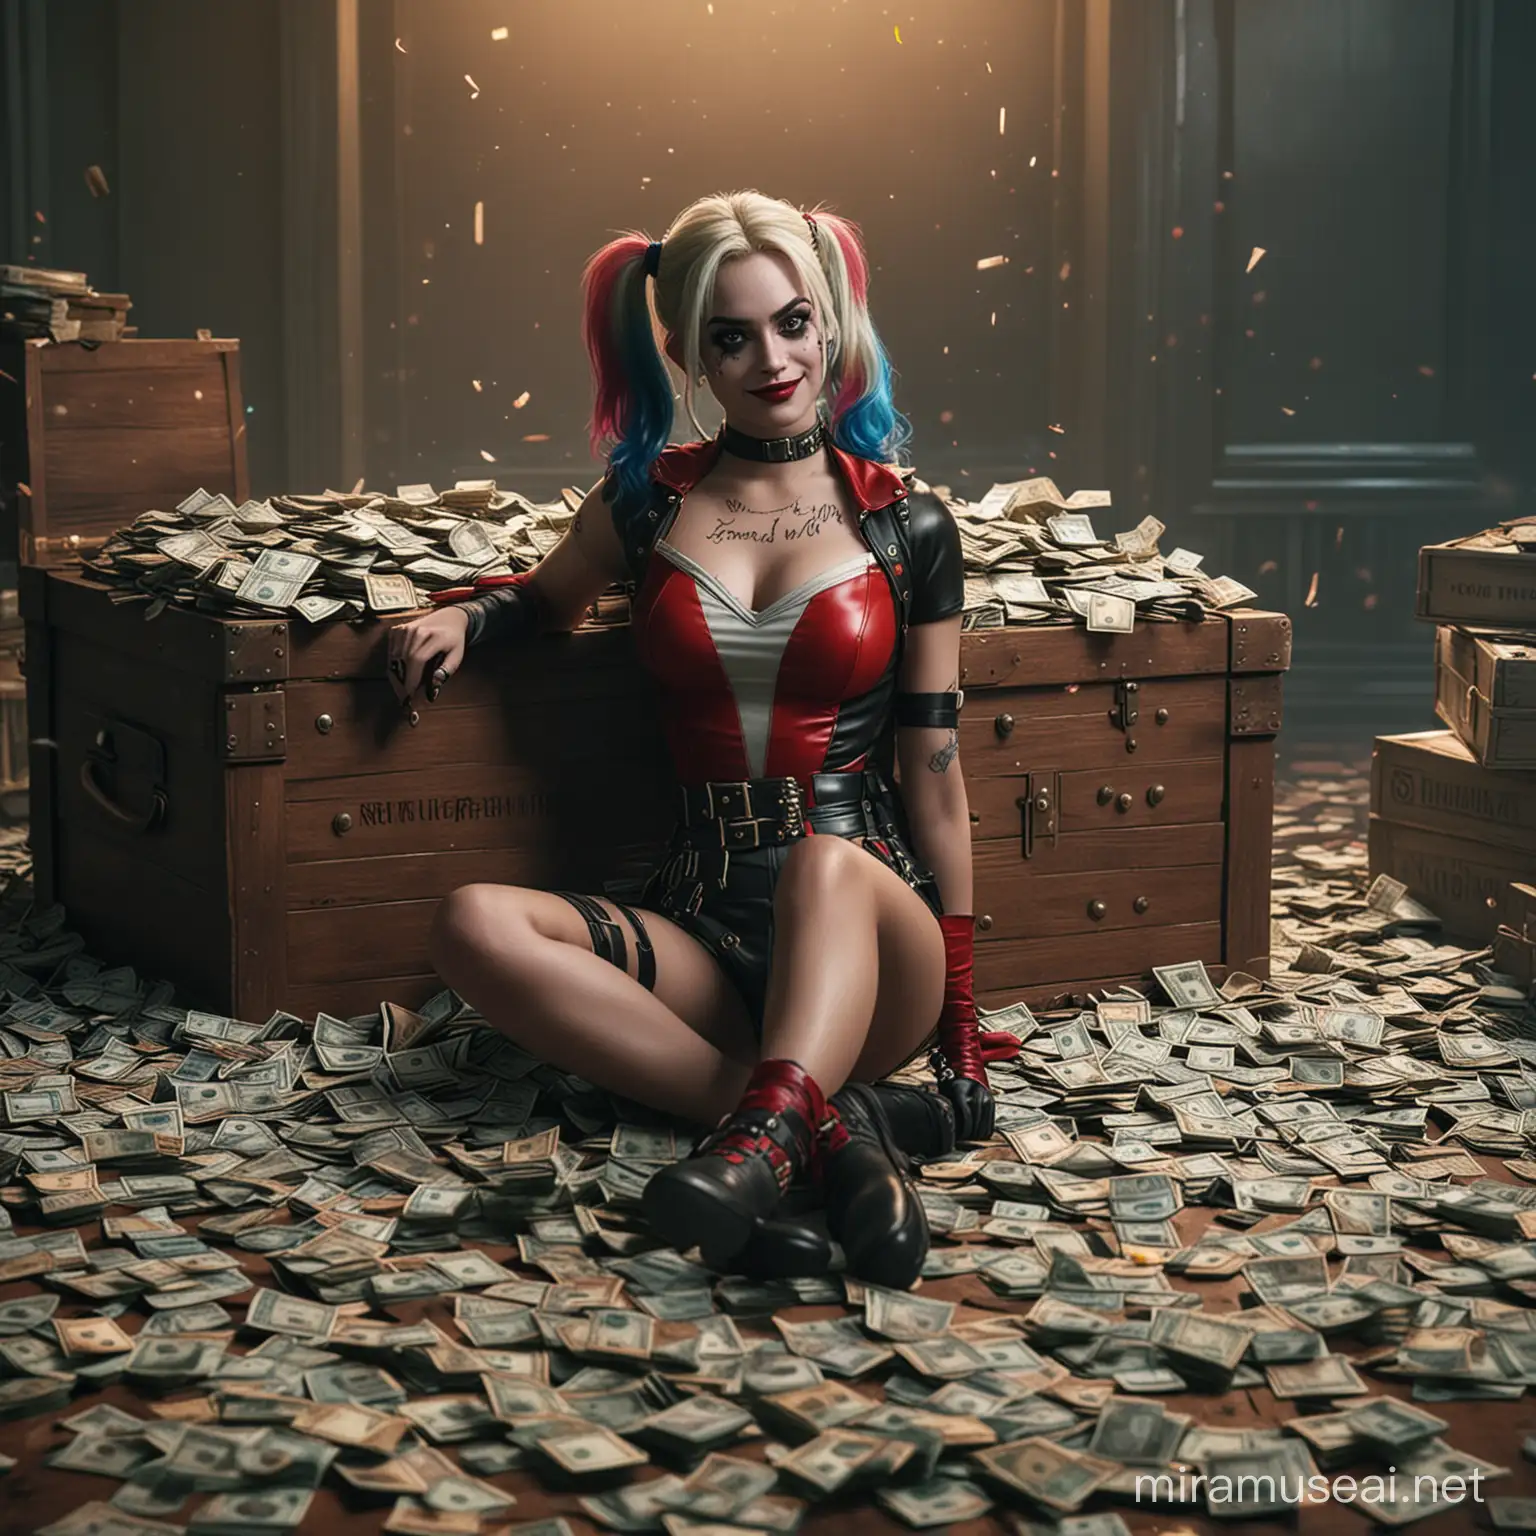 Harley Quinn Sitting on Piles of Cash in Bank Vault Scene